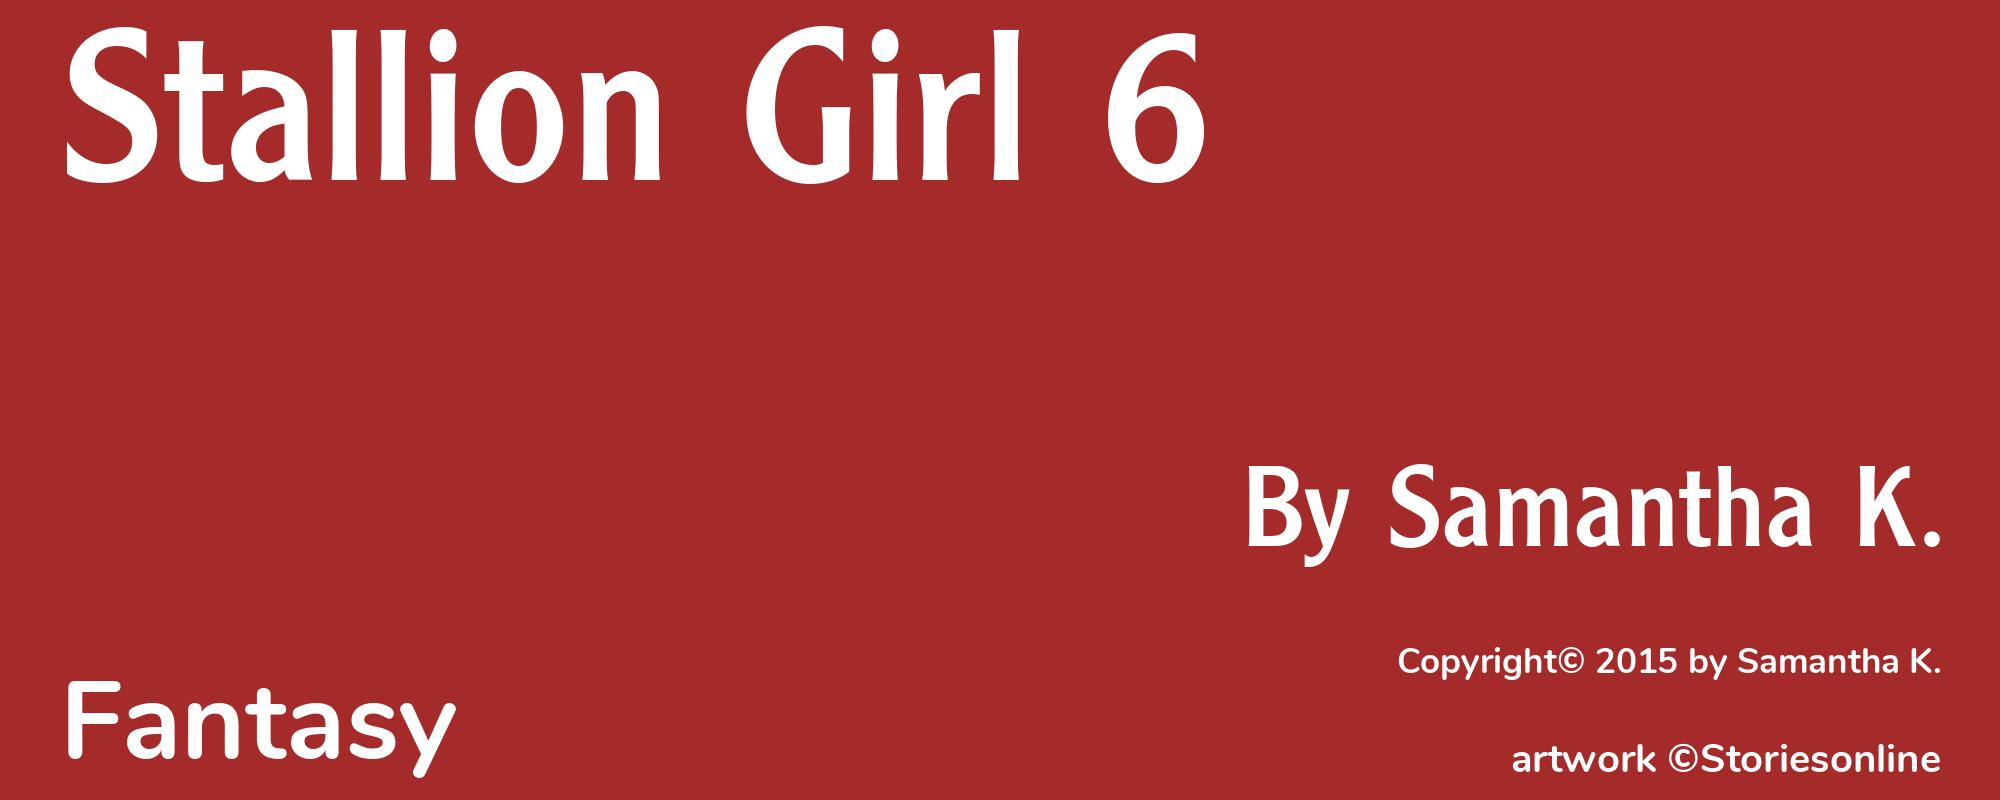 Stallion Girl 6 - Cover